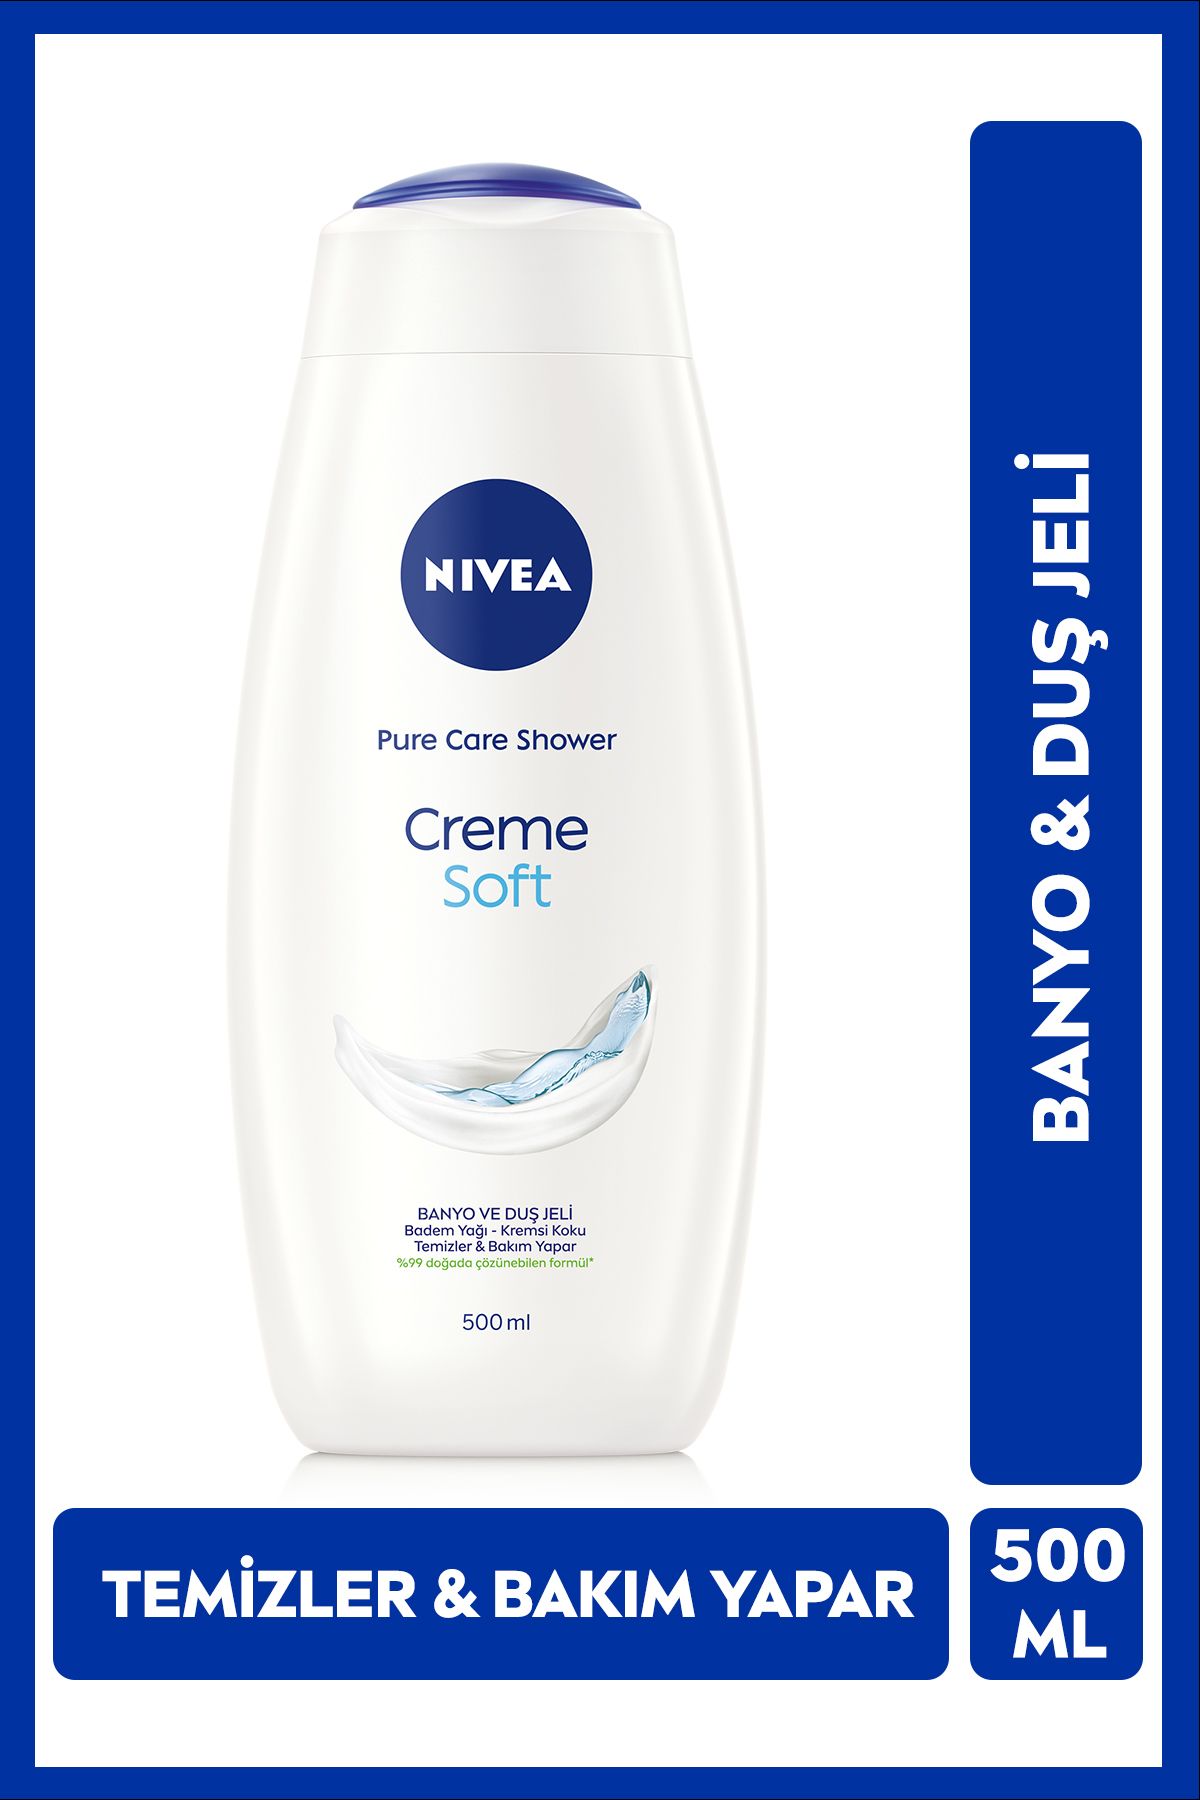 NIVEA Creme Soft Kremsi Dokunuş Banyo Ve Duş Jeli 500ml, Vücut Nemlendirici, Badem Yağı, Pürüzsüz Cilt